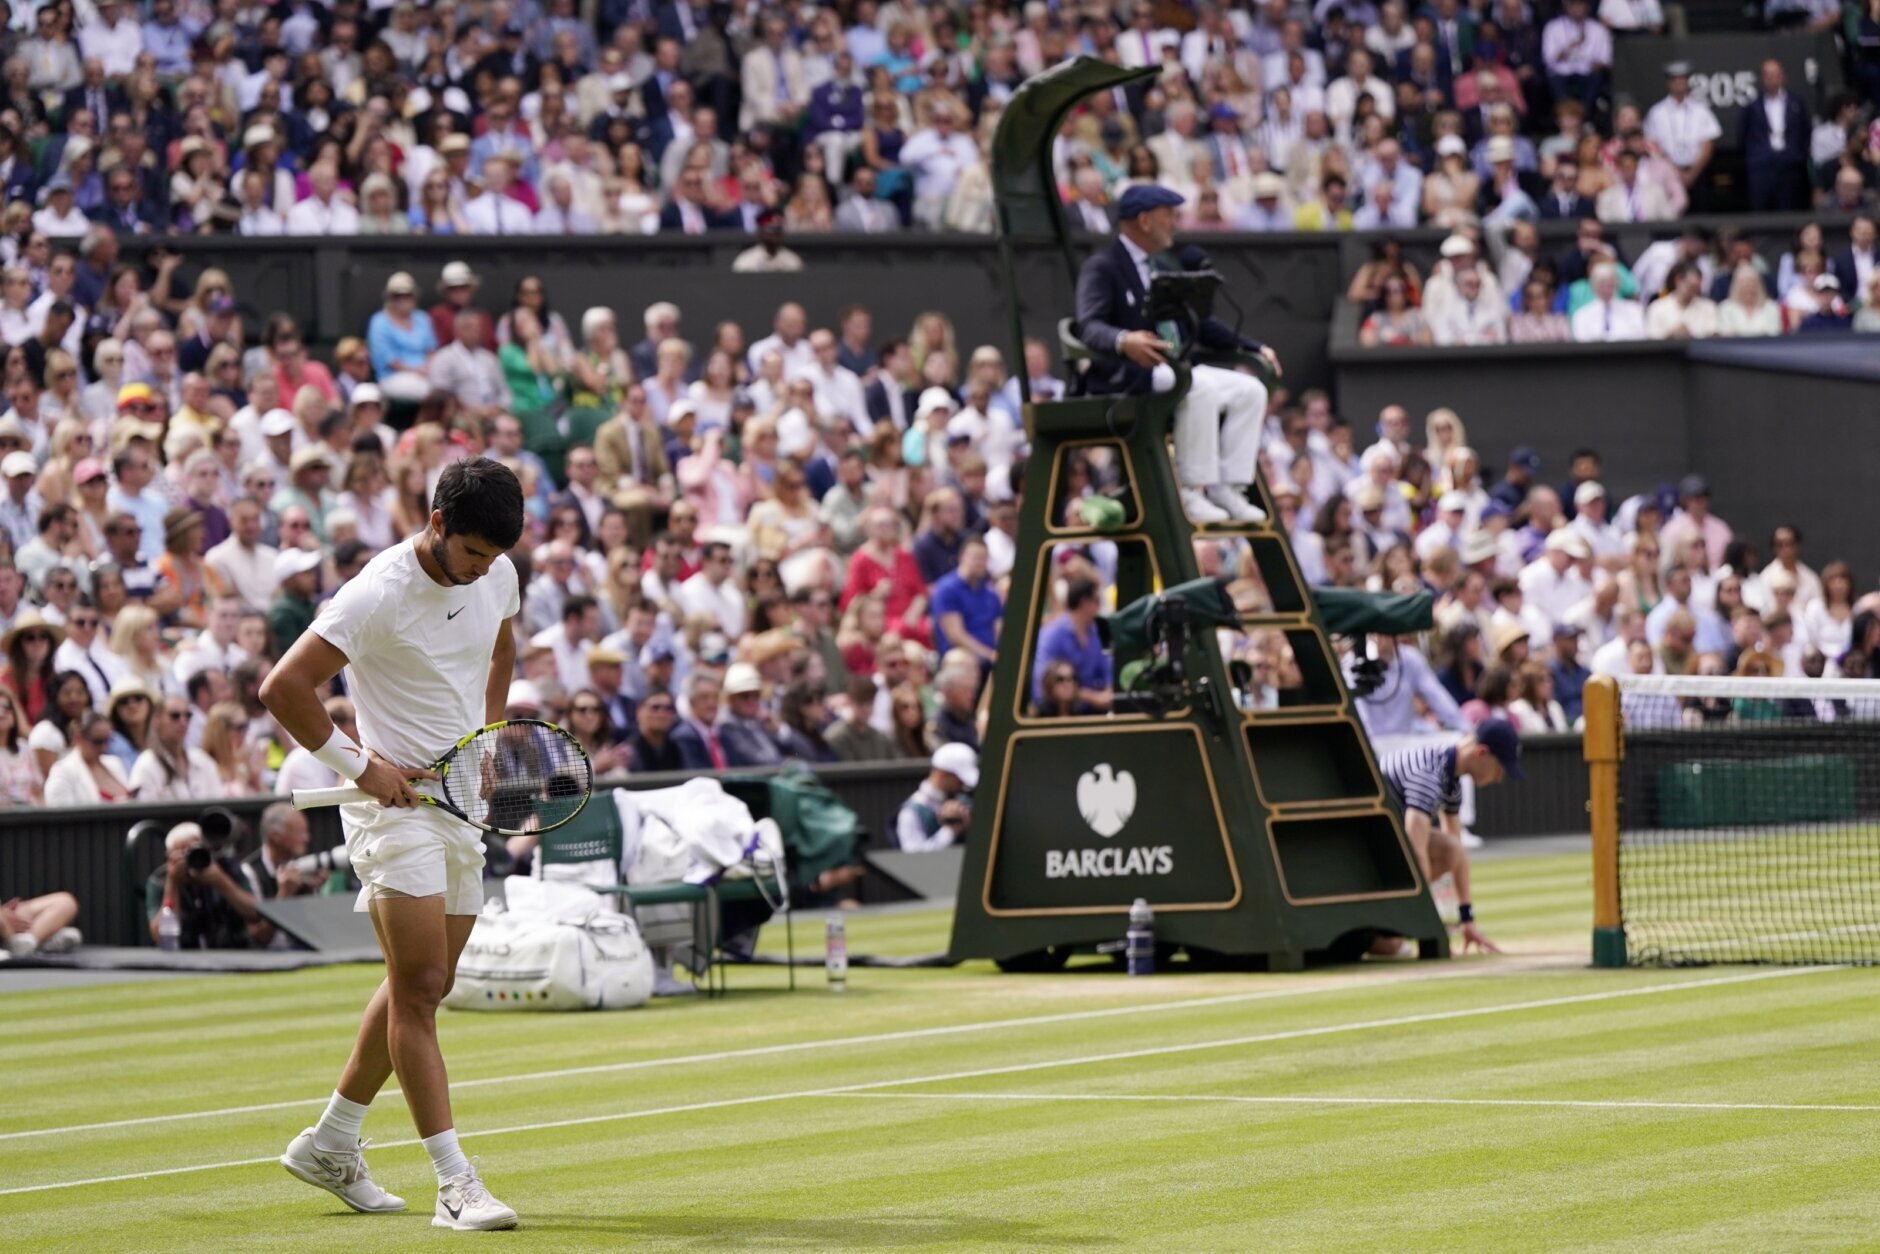 Carlos Alcaraz, Wimbledon men's singles champion facts and figures